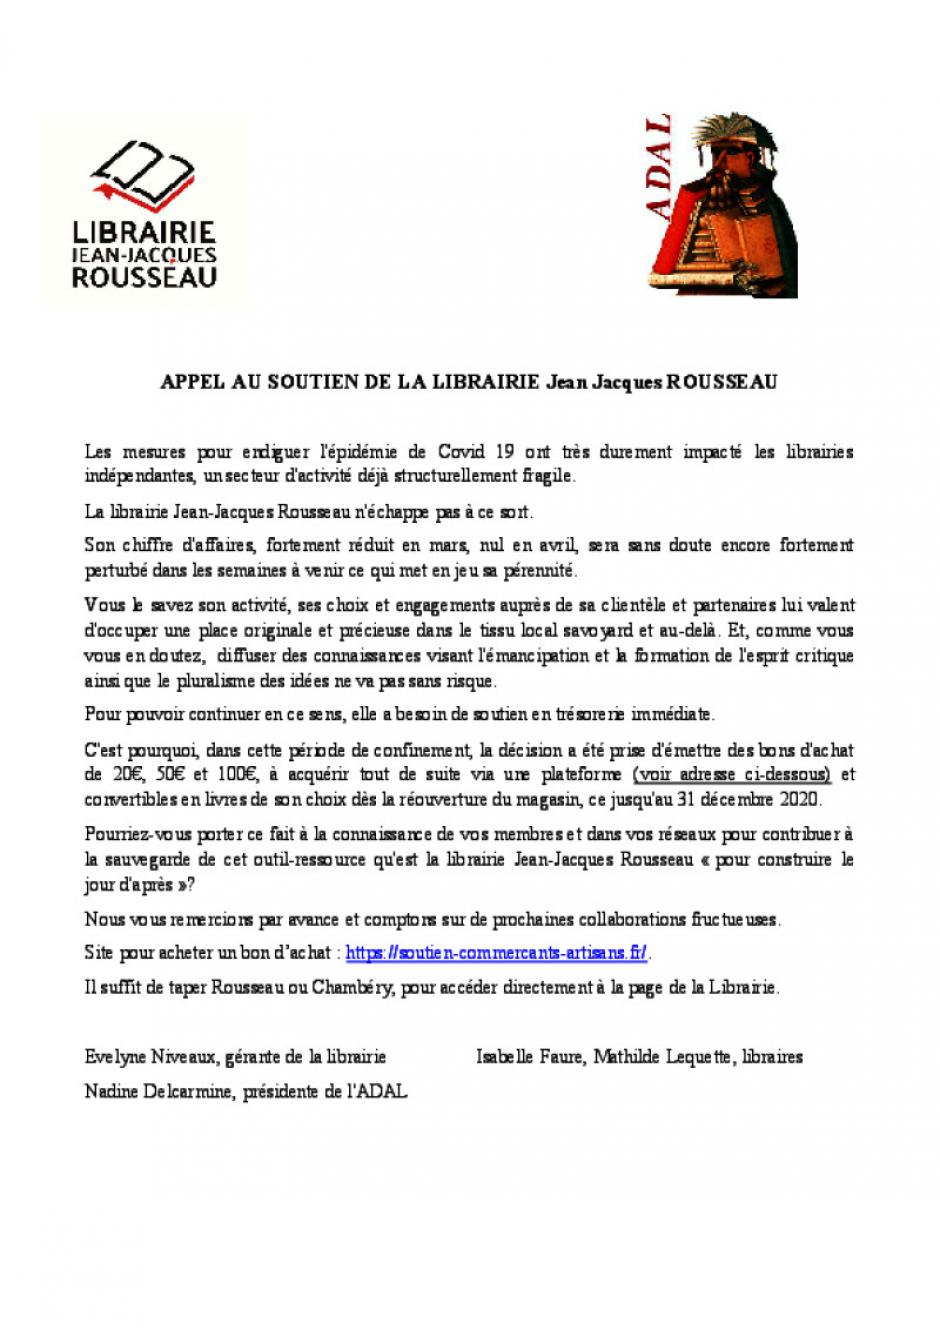 Appel au soutien de la librairie Jean-Jacques Rousseau